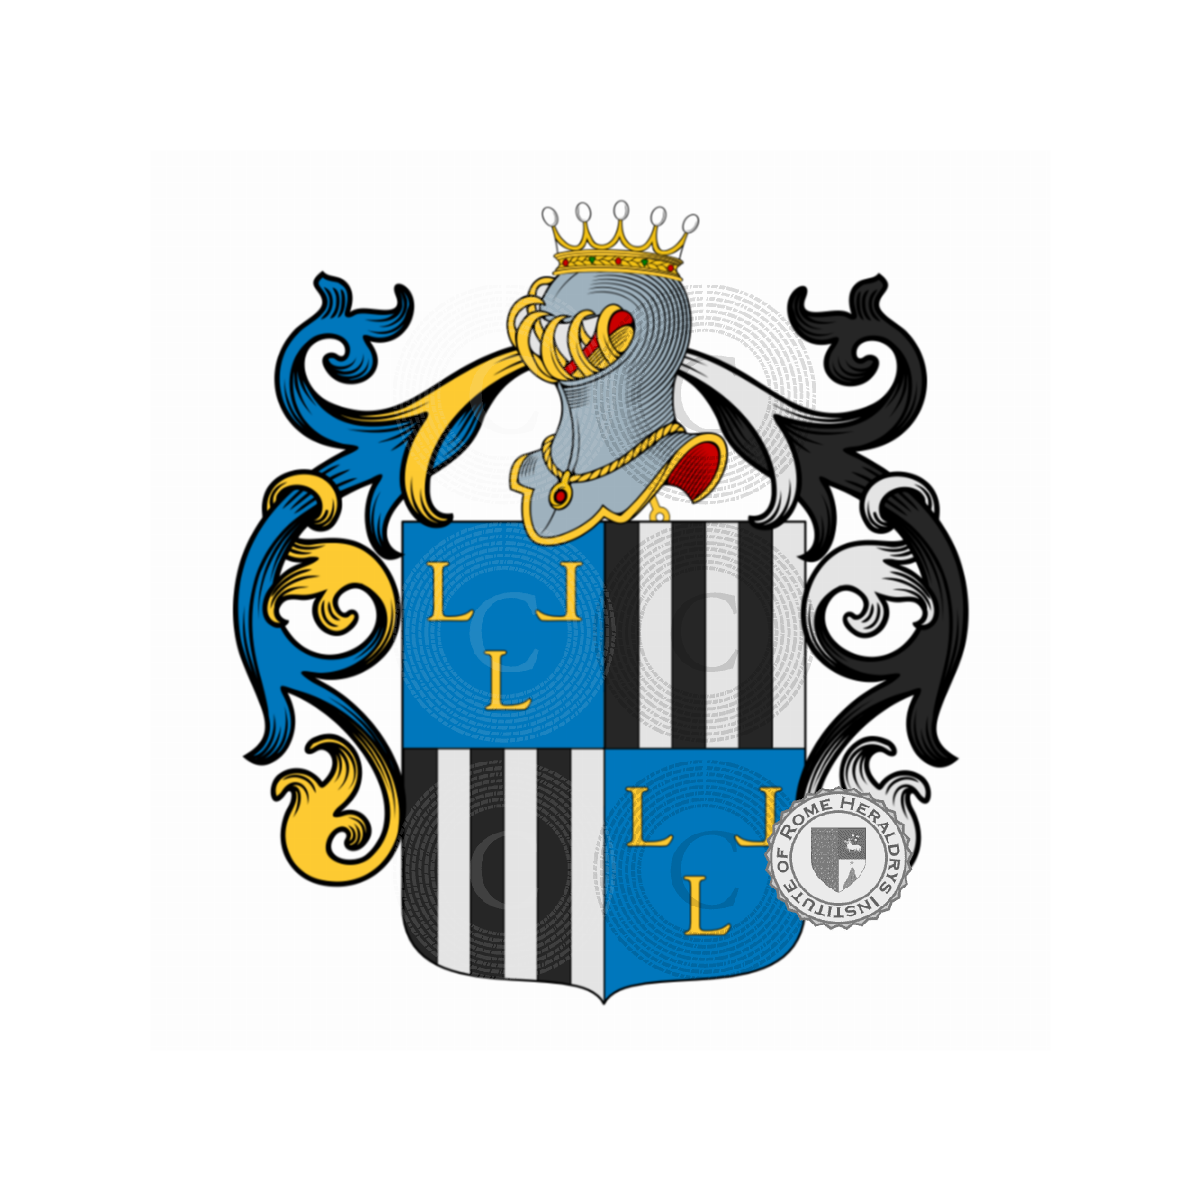 Wappen der FamilieLelli, de Lelli,de Lello,di Lello,Lelio,Lelllo,Nicoli,Randolfi